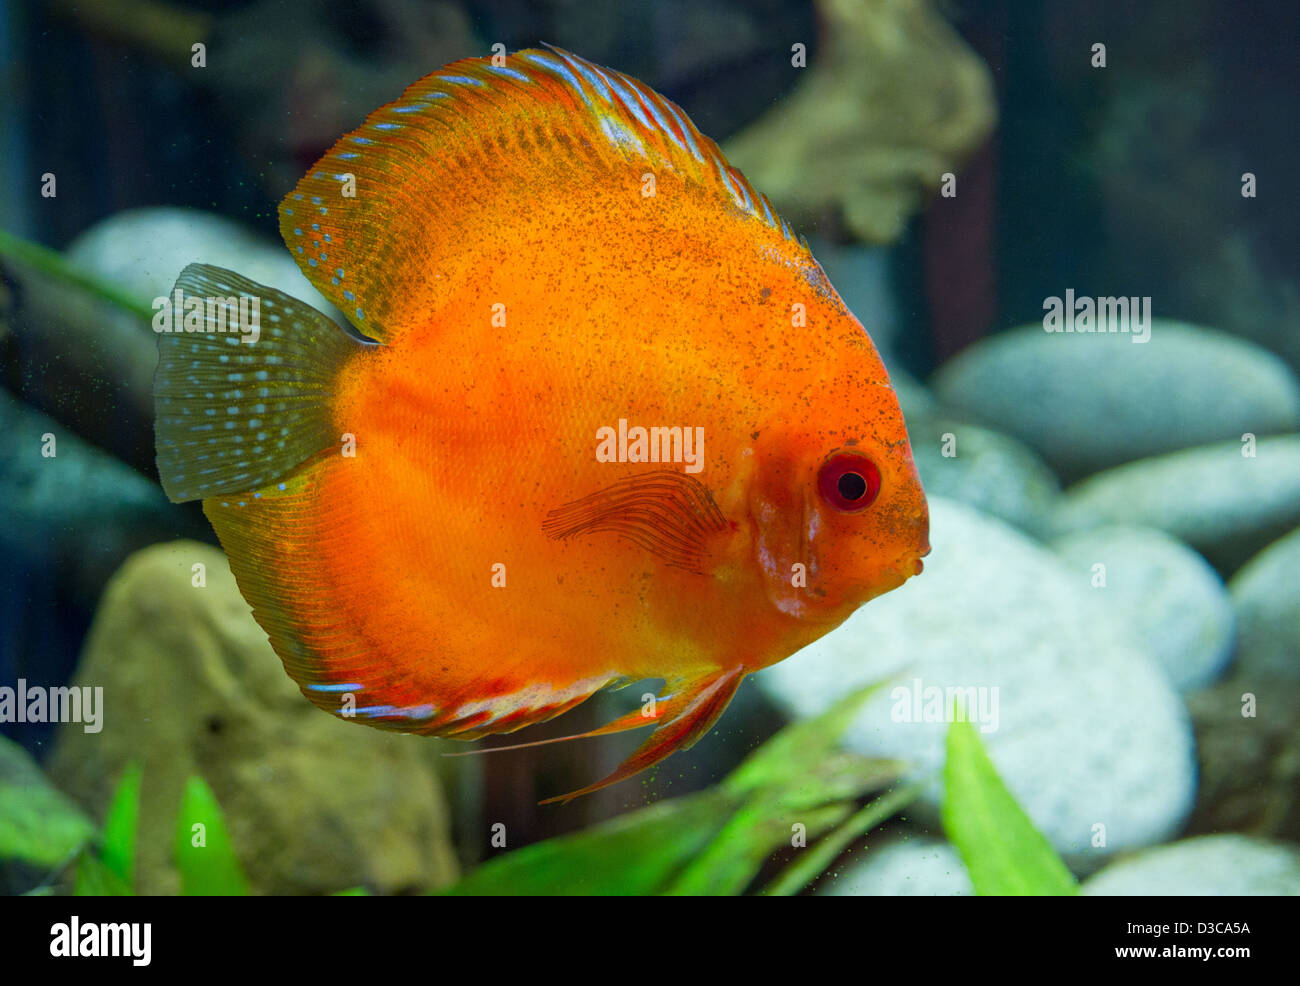 Superb orange Discus fish (Symphysodon aequifasciatu) Stock Photo